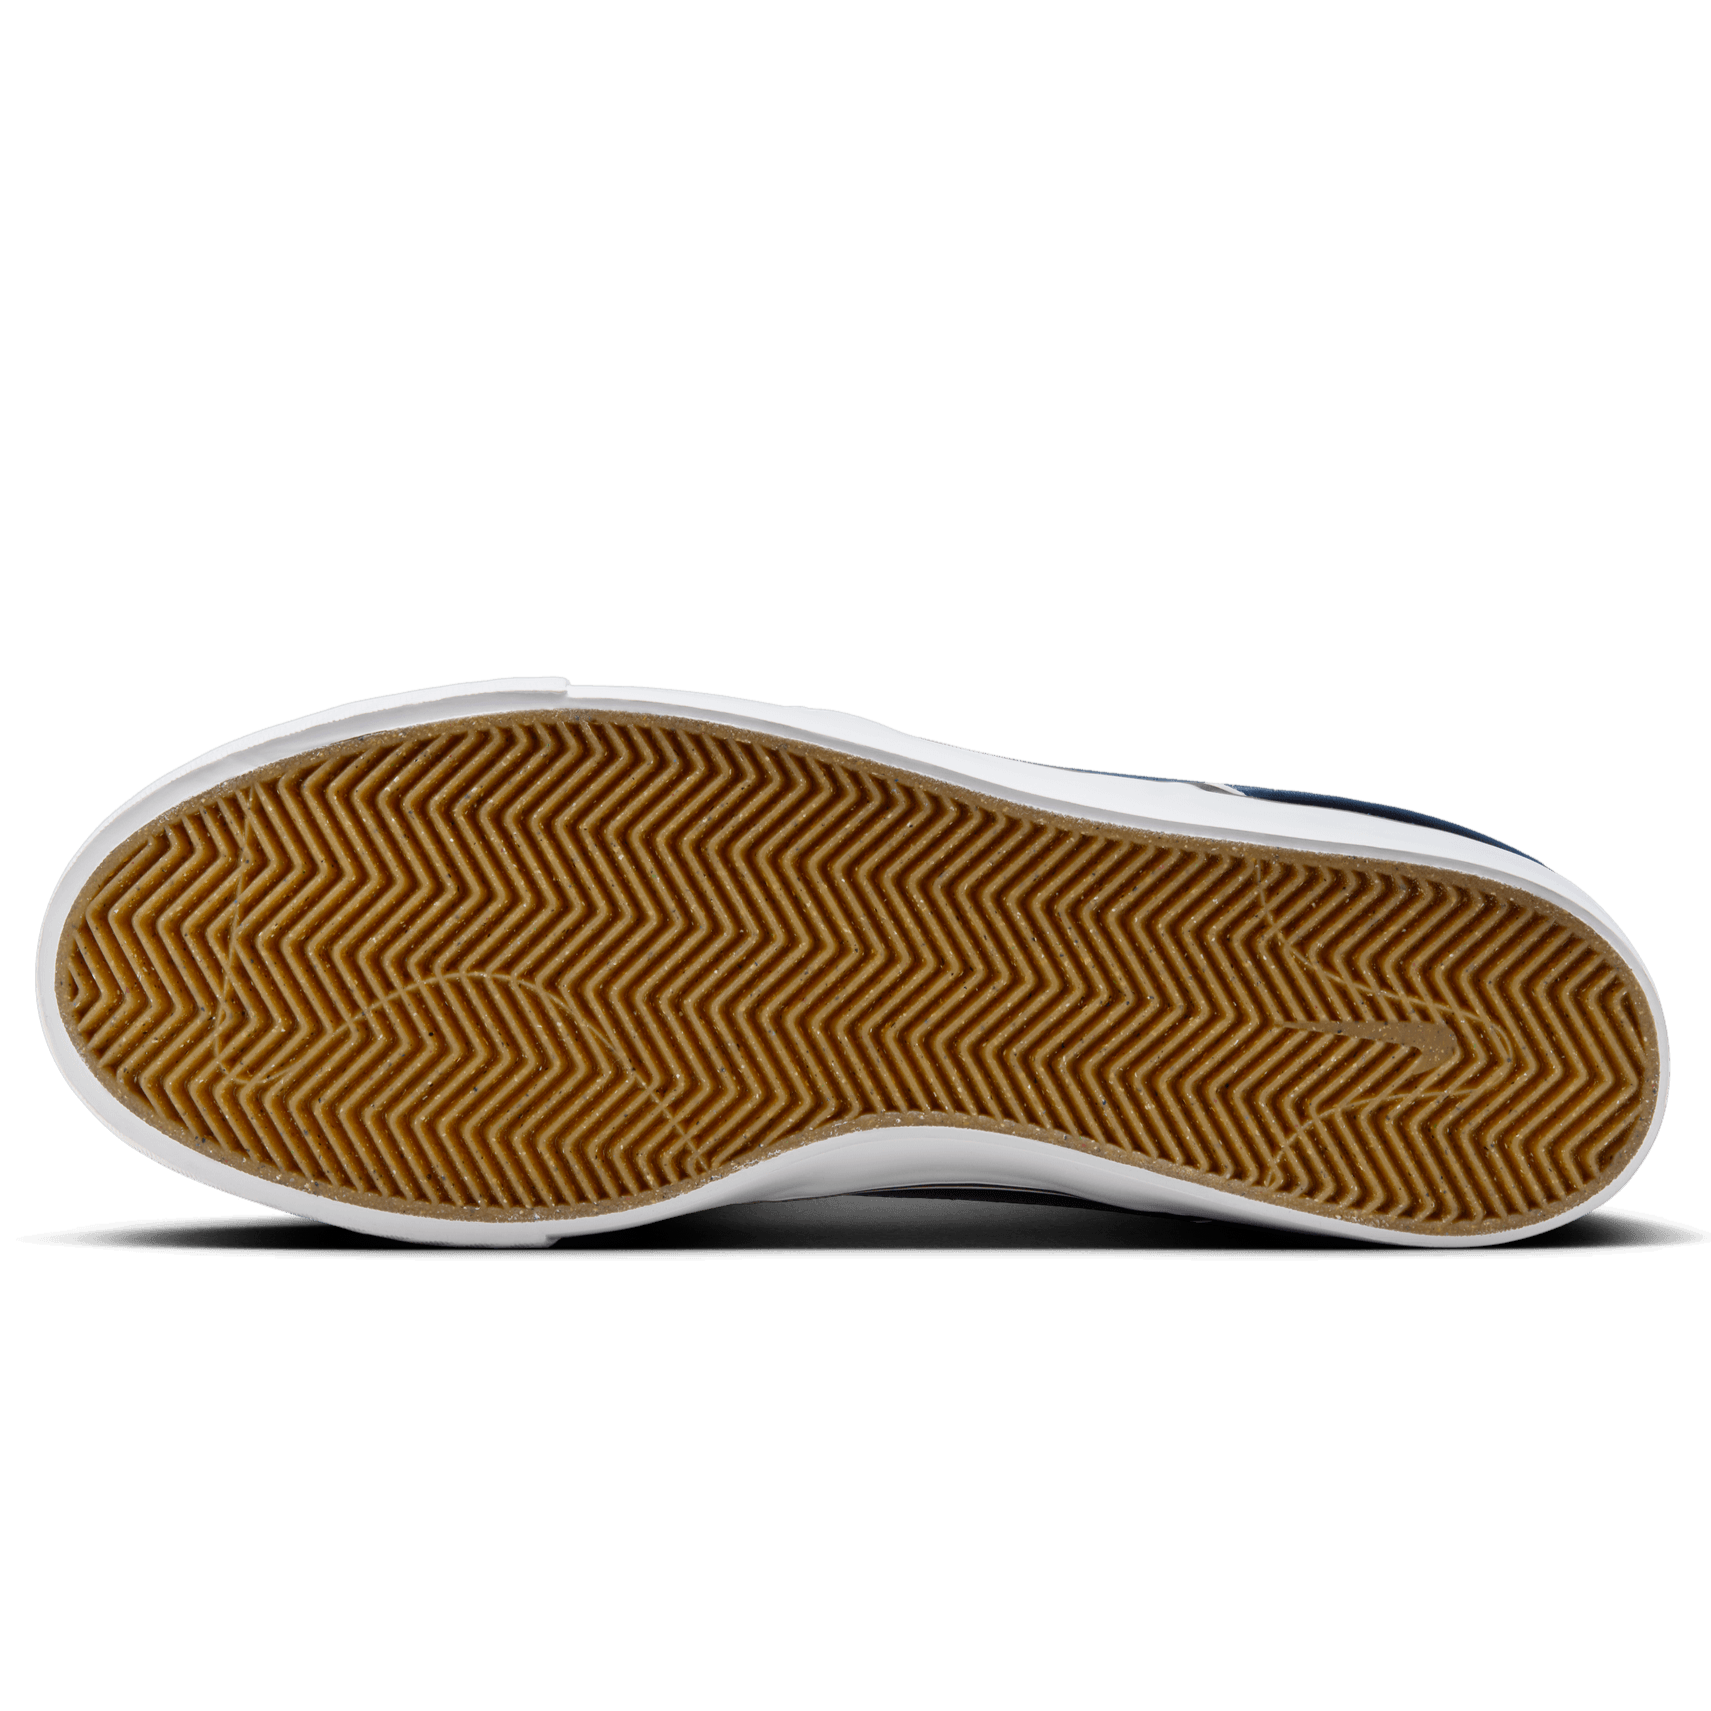 Navy/White Janoski+ Nike SB Skate Shoe Bottom